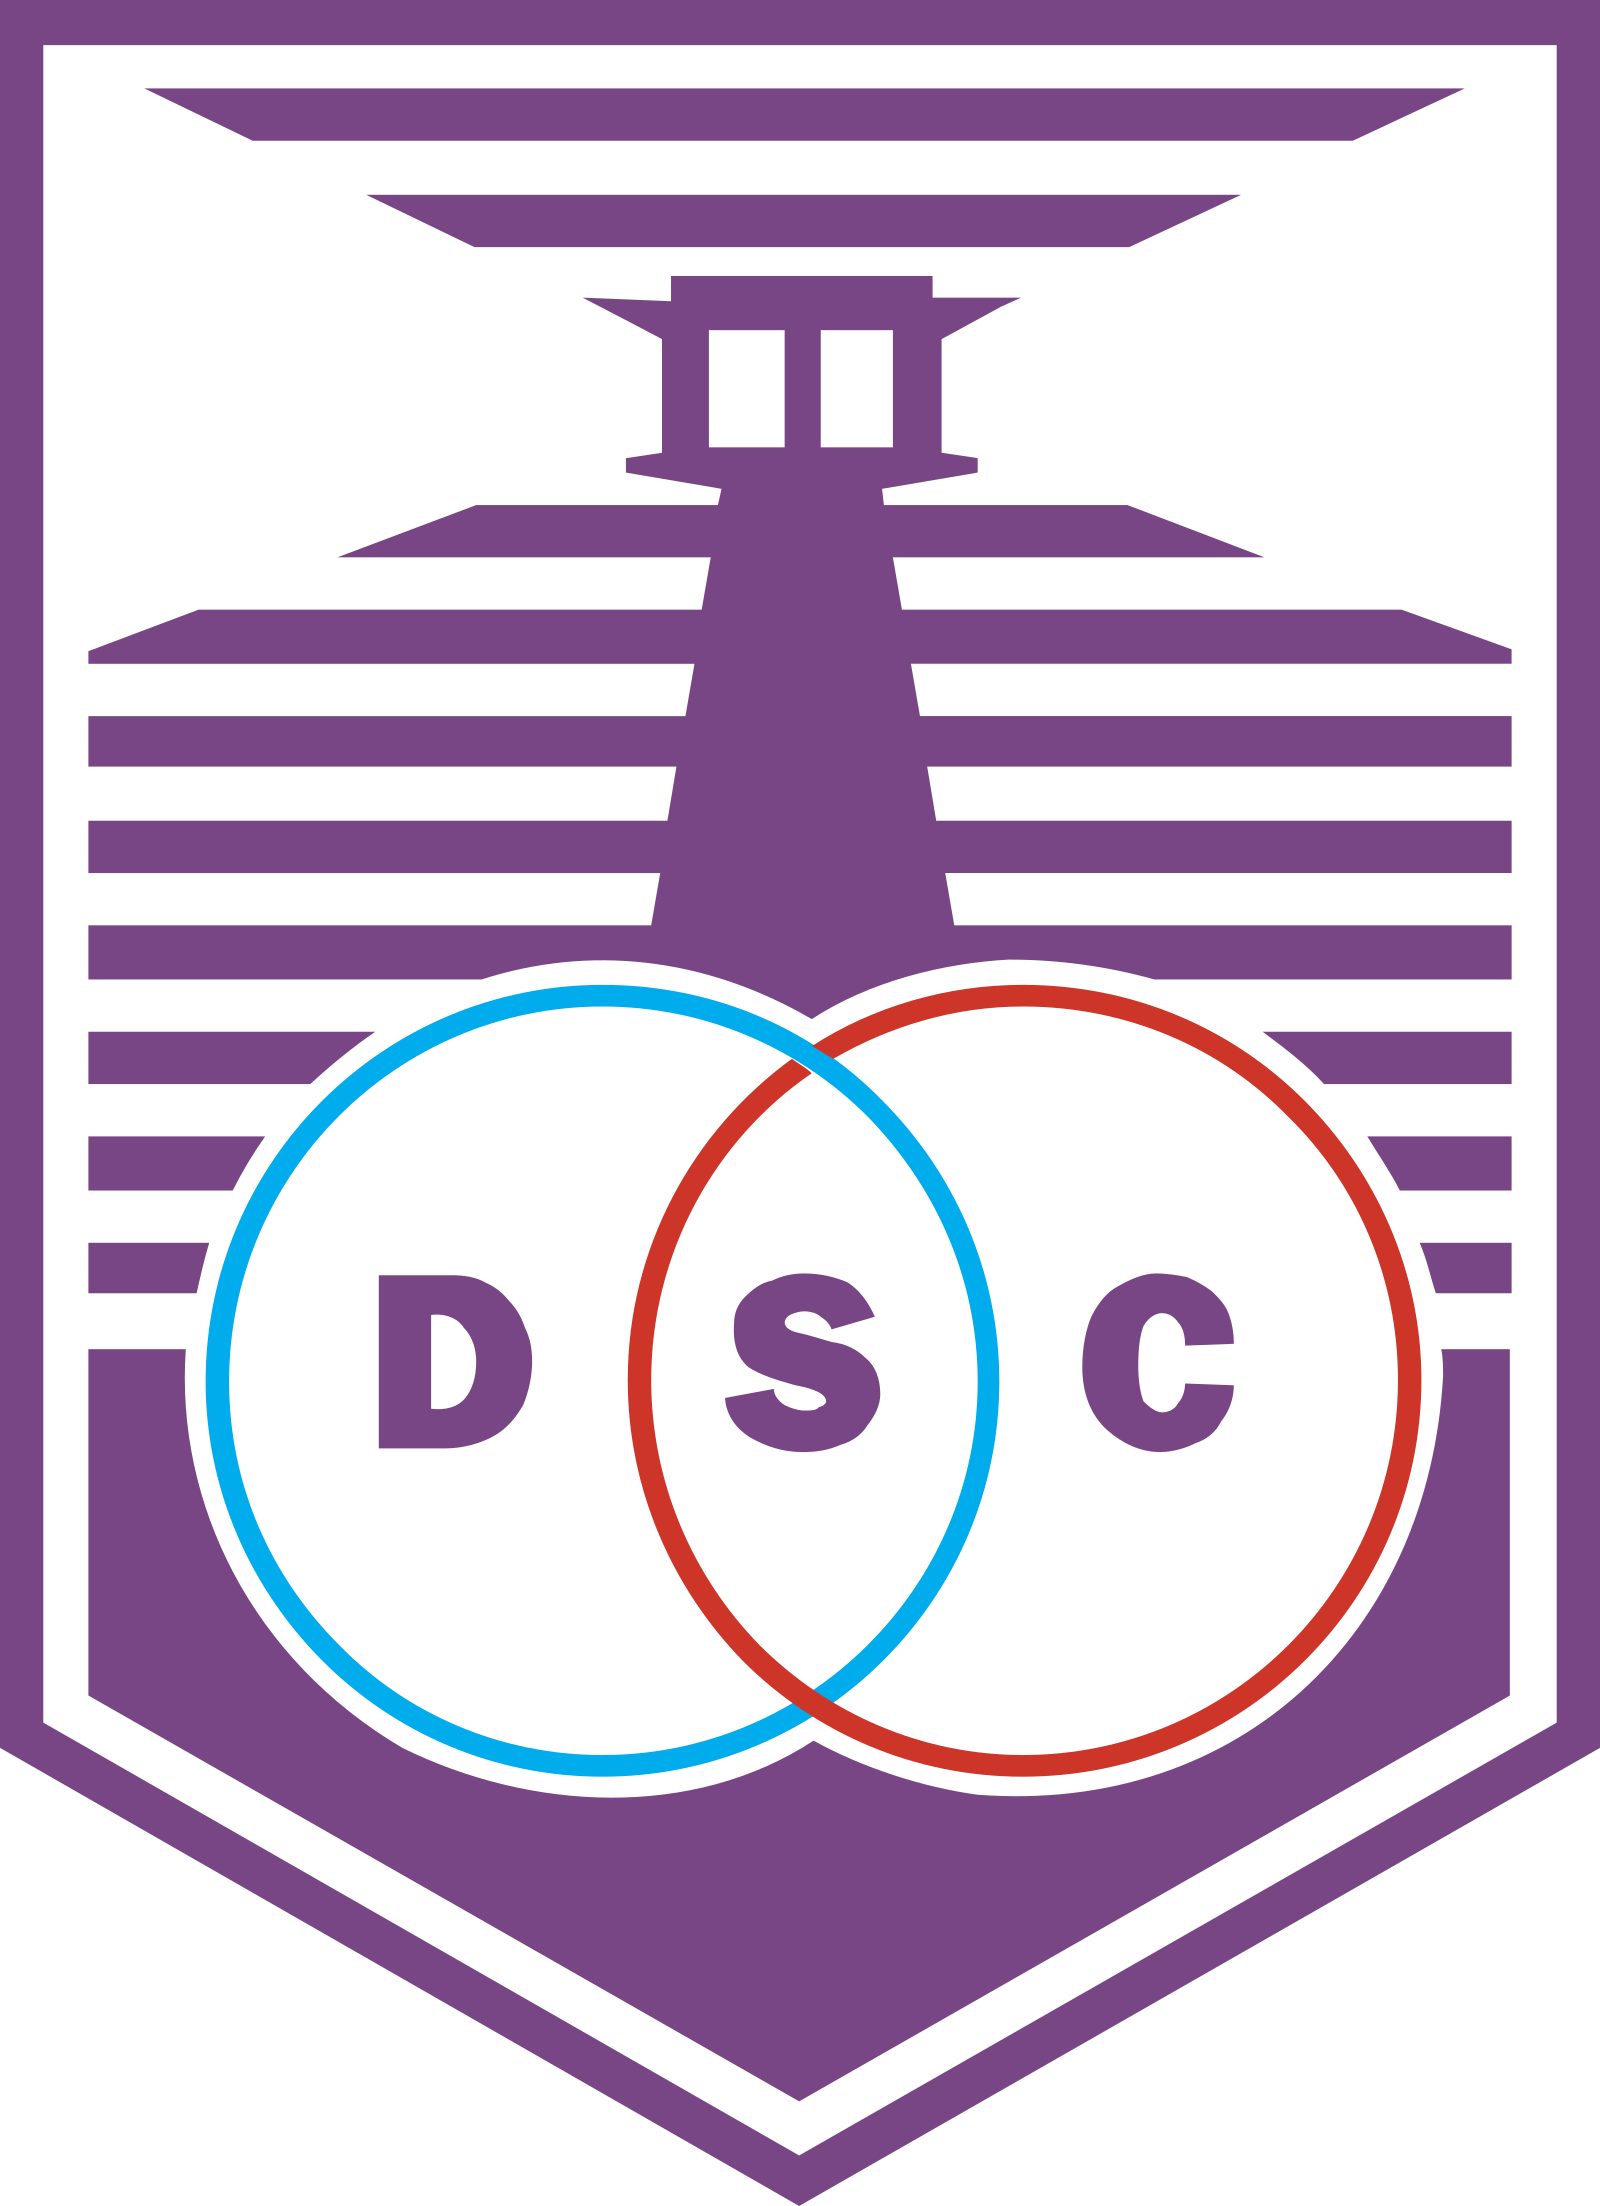 Defensor uruguai logo escudo.